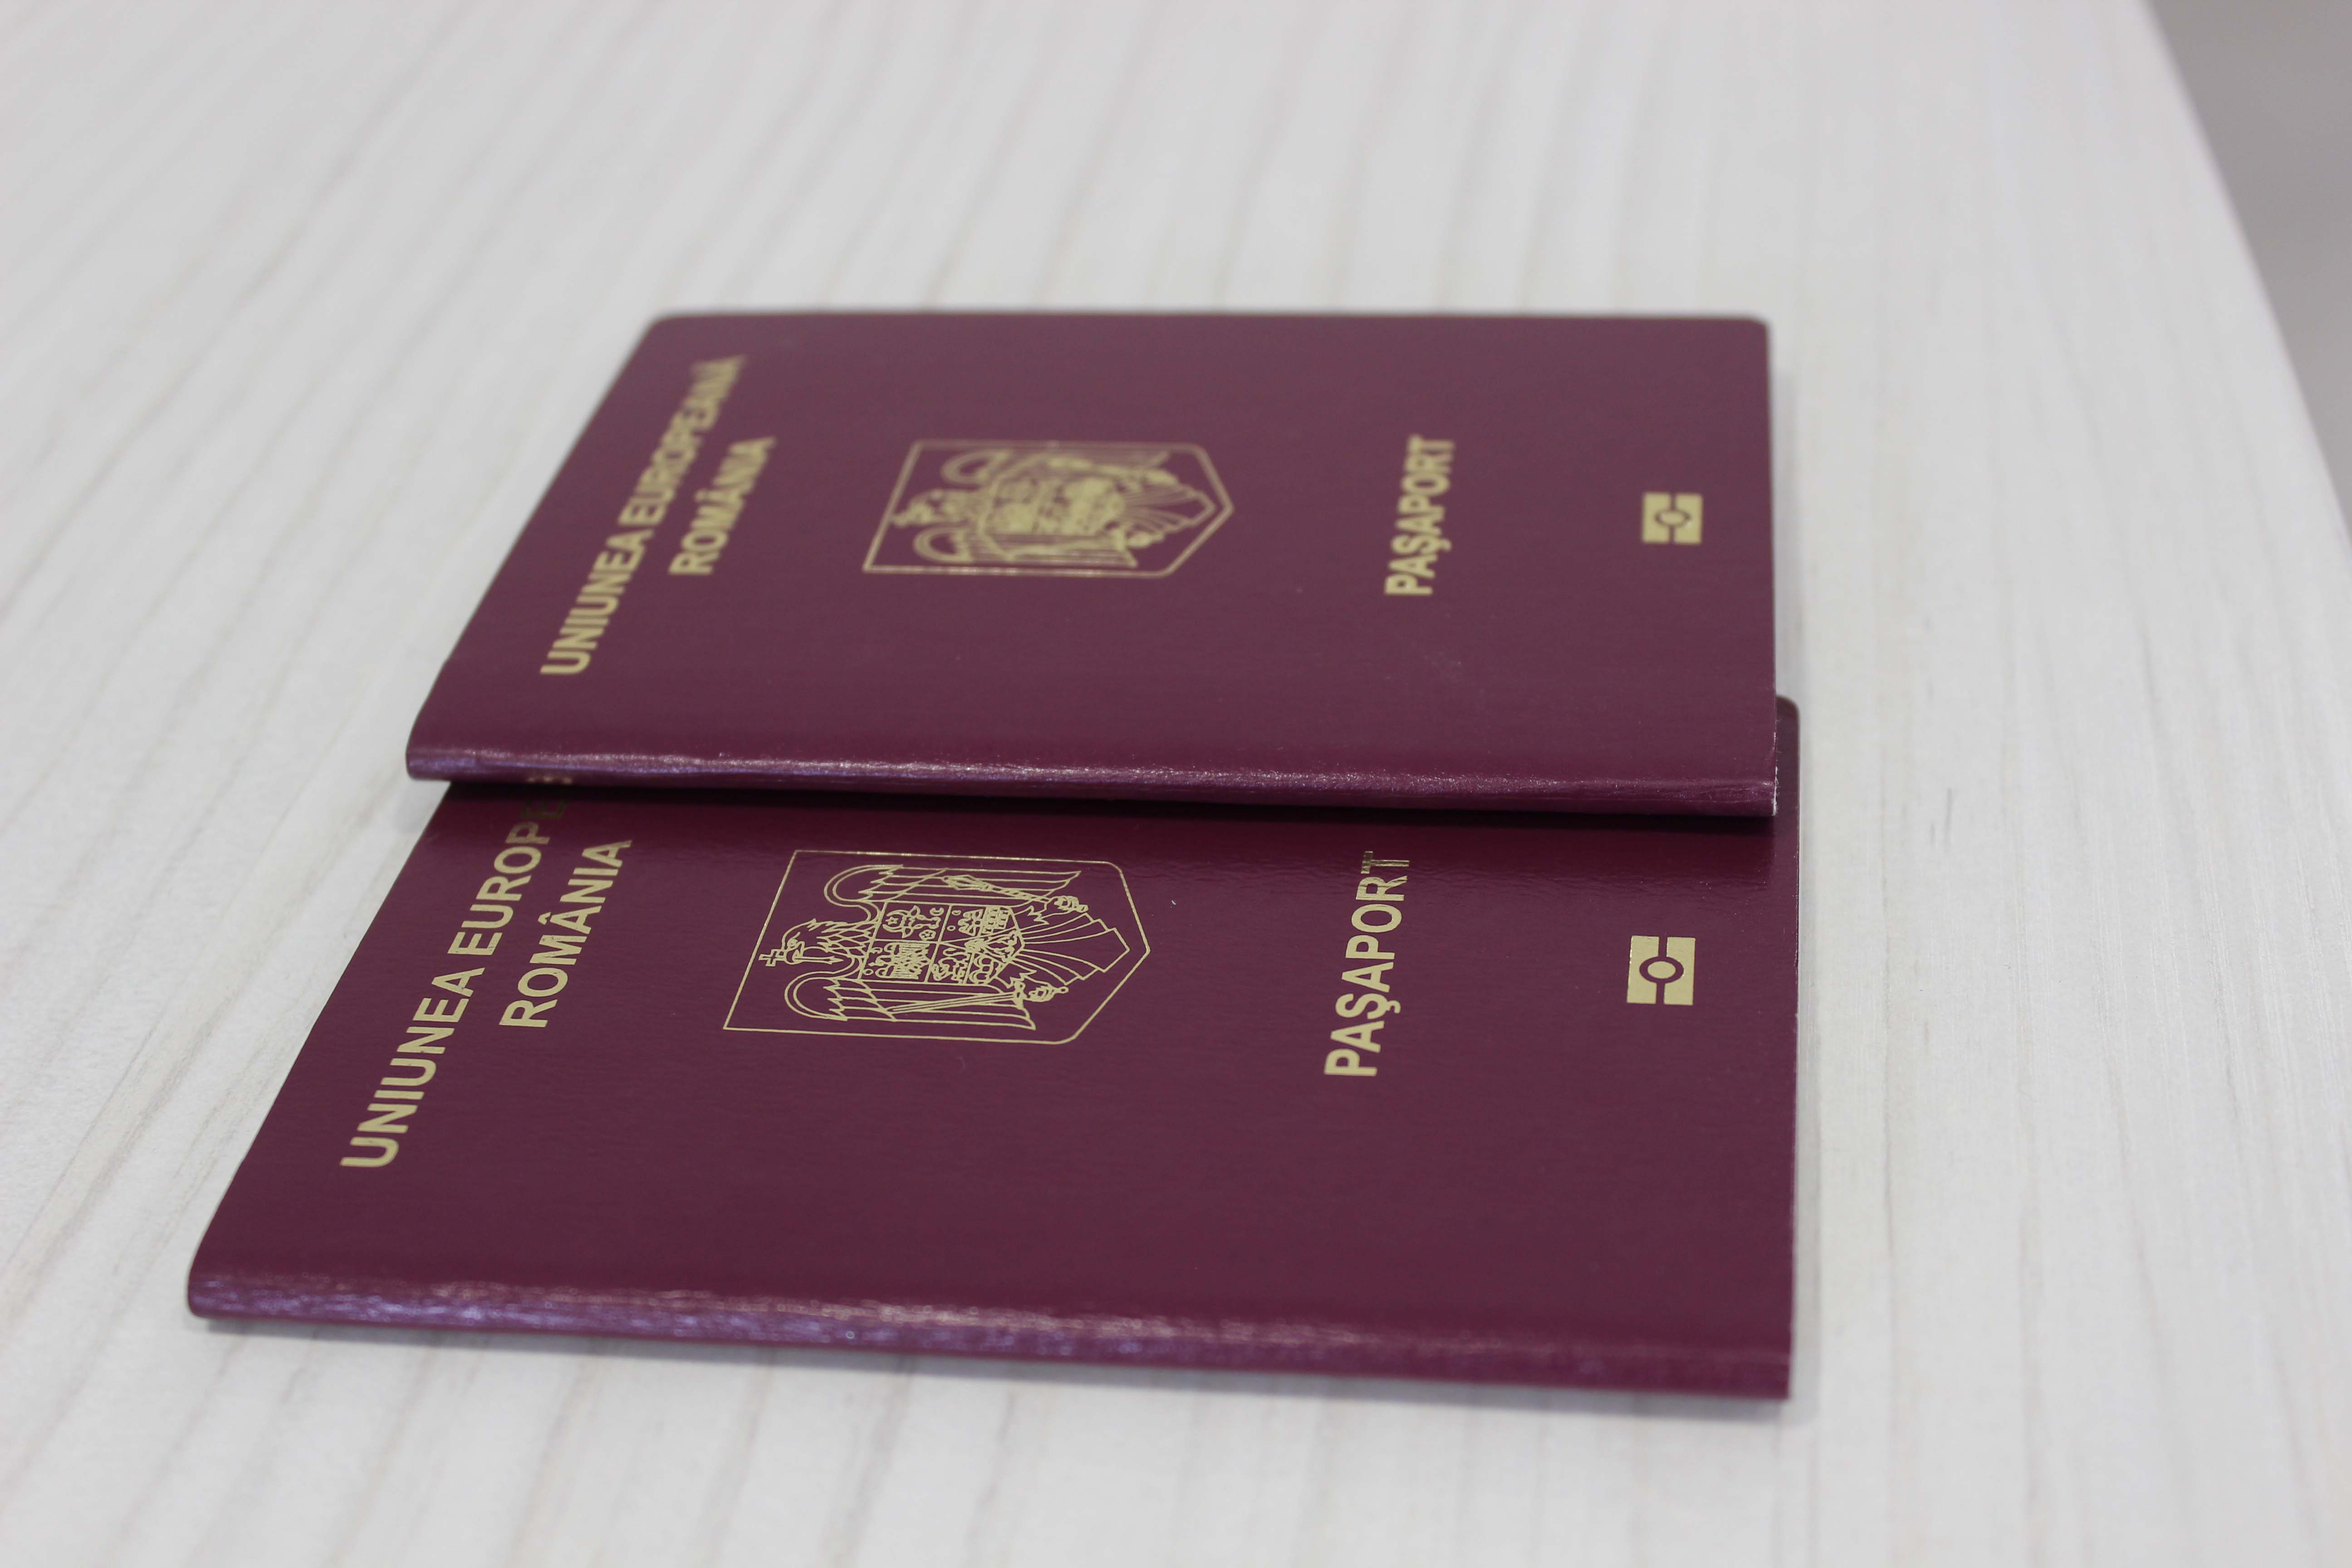 Как при получении румынского гражданства по репатриации, так и за инвестиции, не понадобится постоянного проживания в стране, отказа от паспорта в родном государстве, а также владения языком.